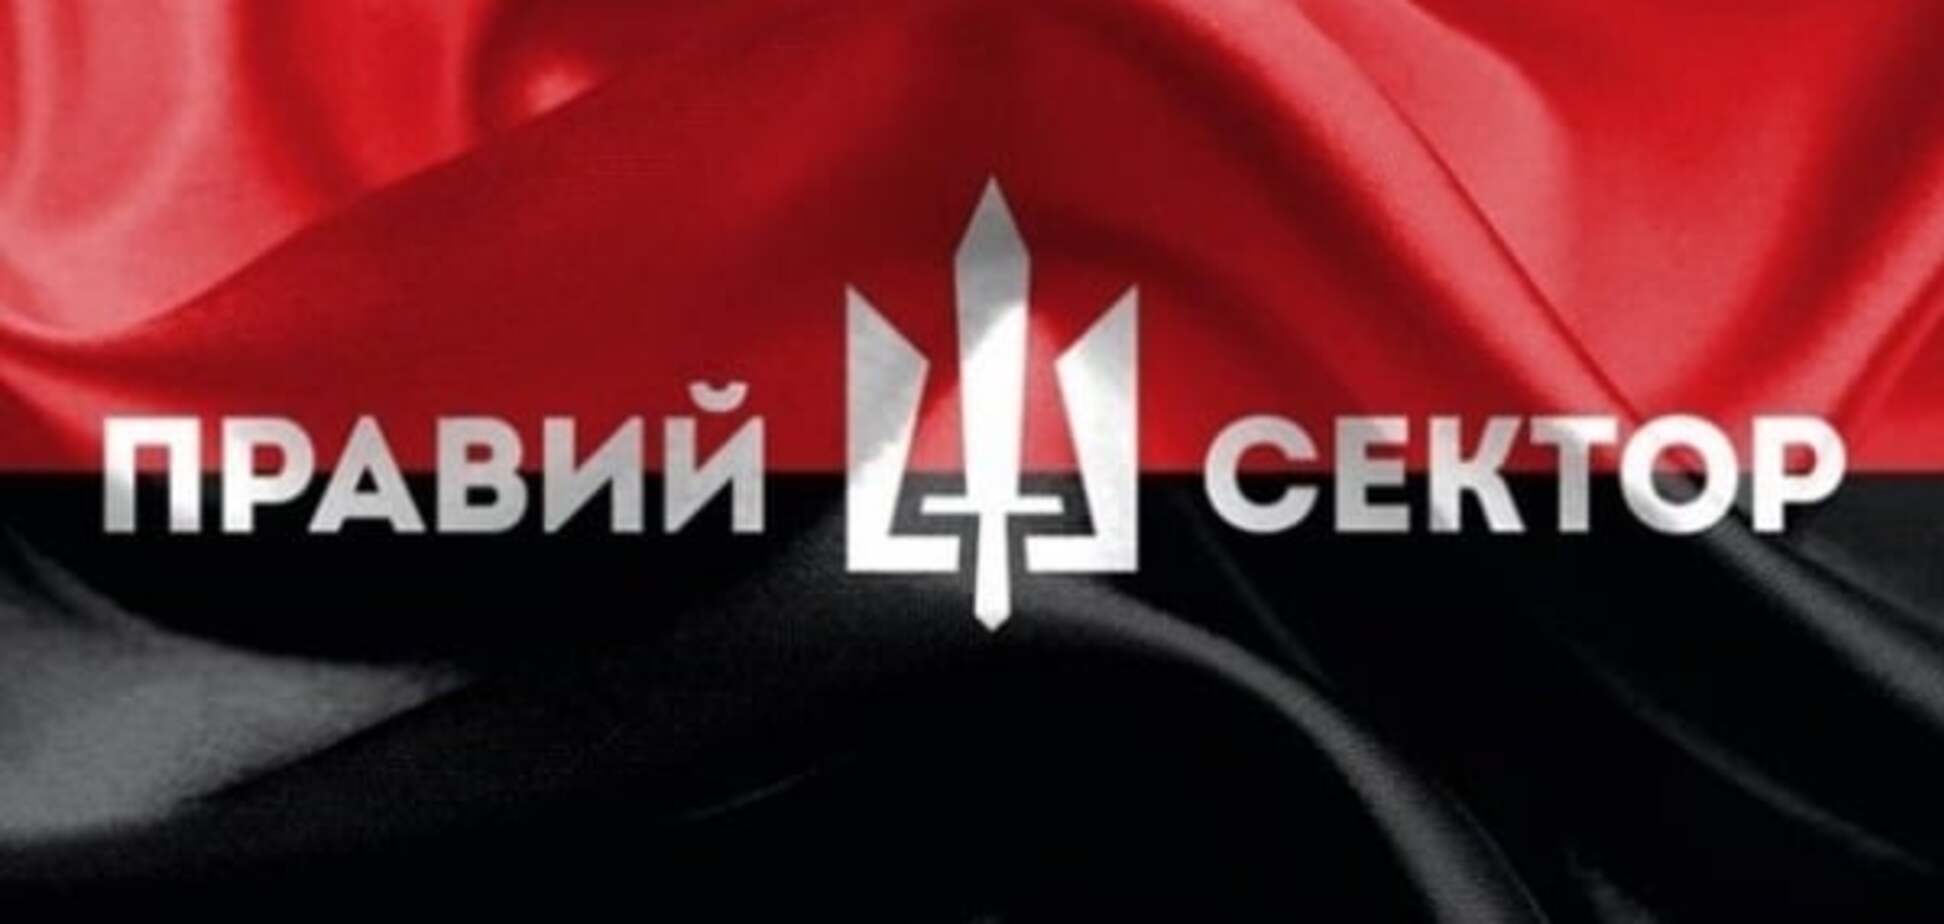 Вороги народу: в Росії видання покарали за 'Правий сектор'